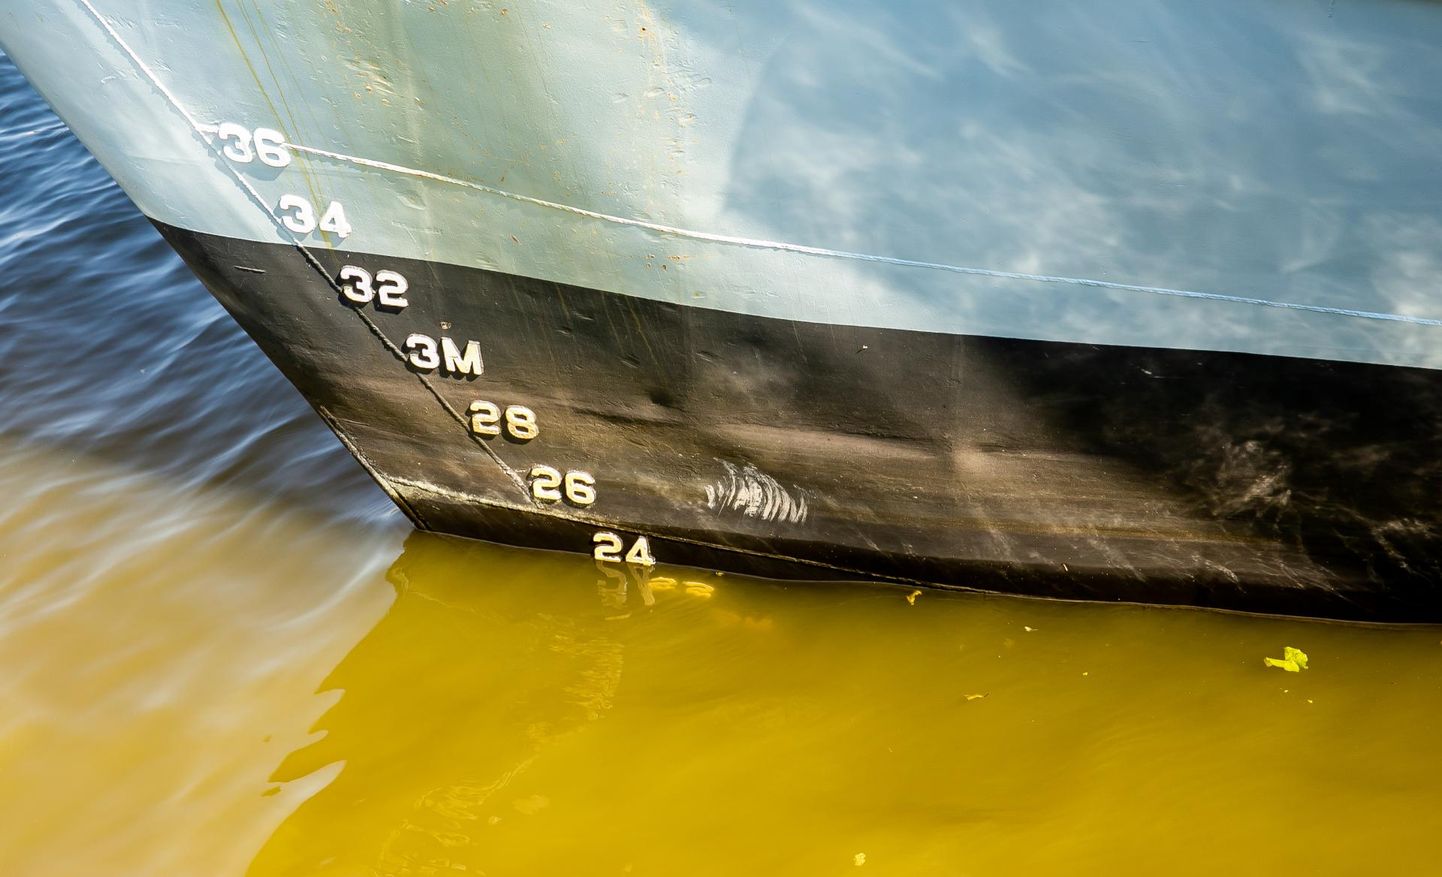 Яхта класса люкс Jade 959, ранее достигшая с Пярнуским портом договоренности о заходе на швартовку в четверг, отменила посещение эстонского города.